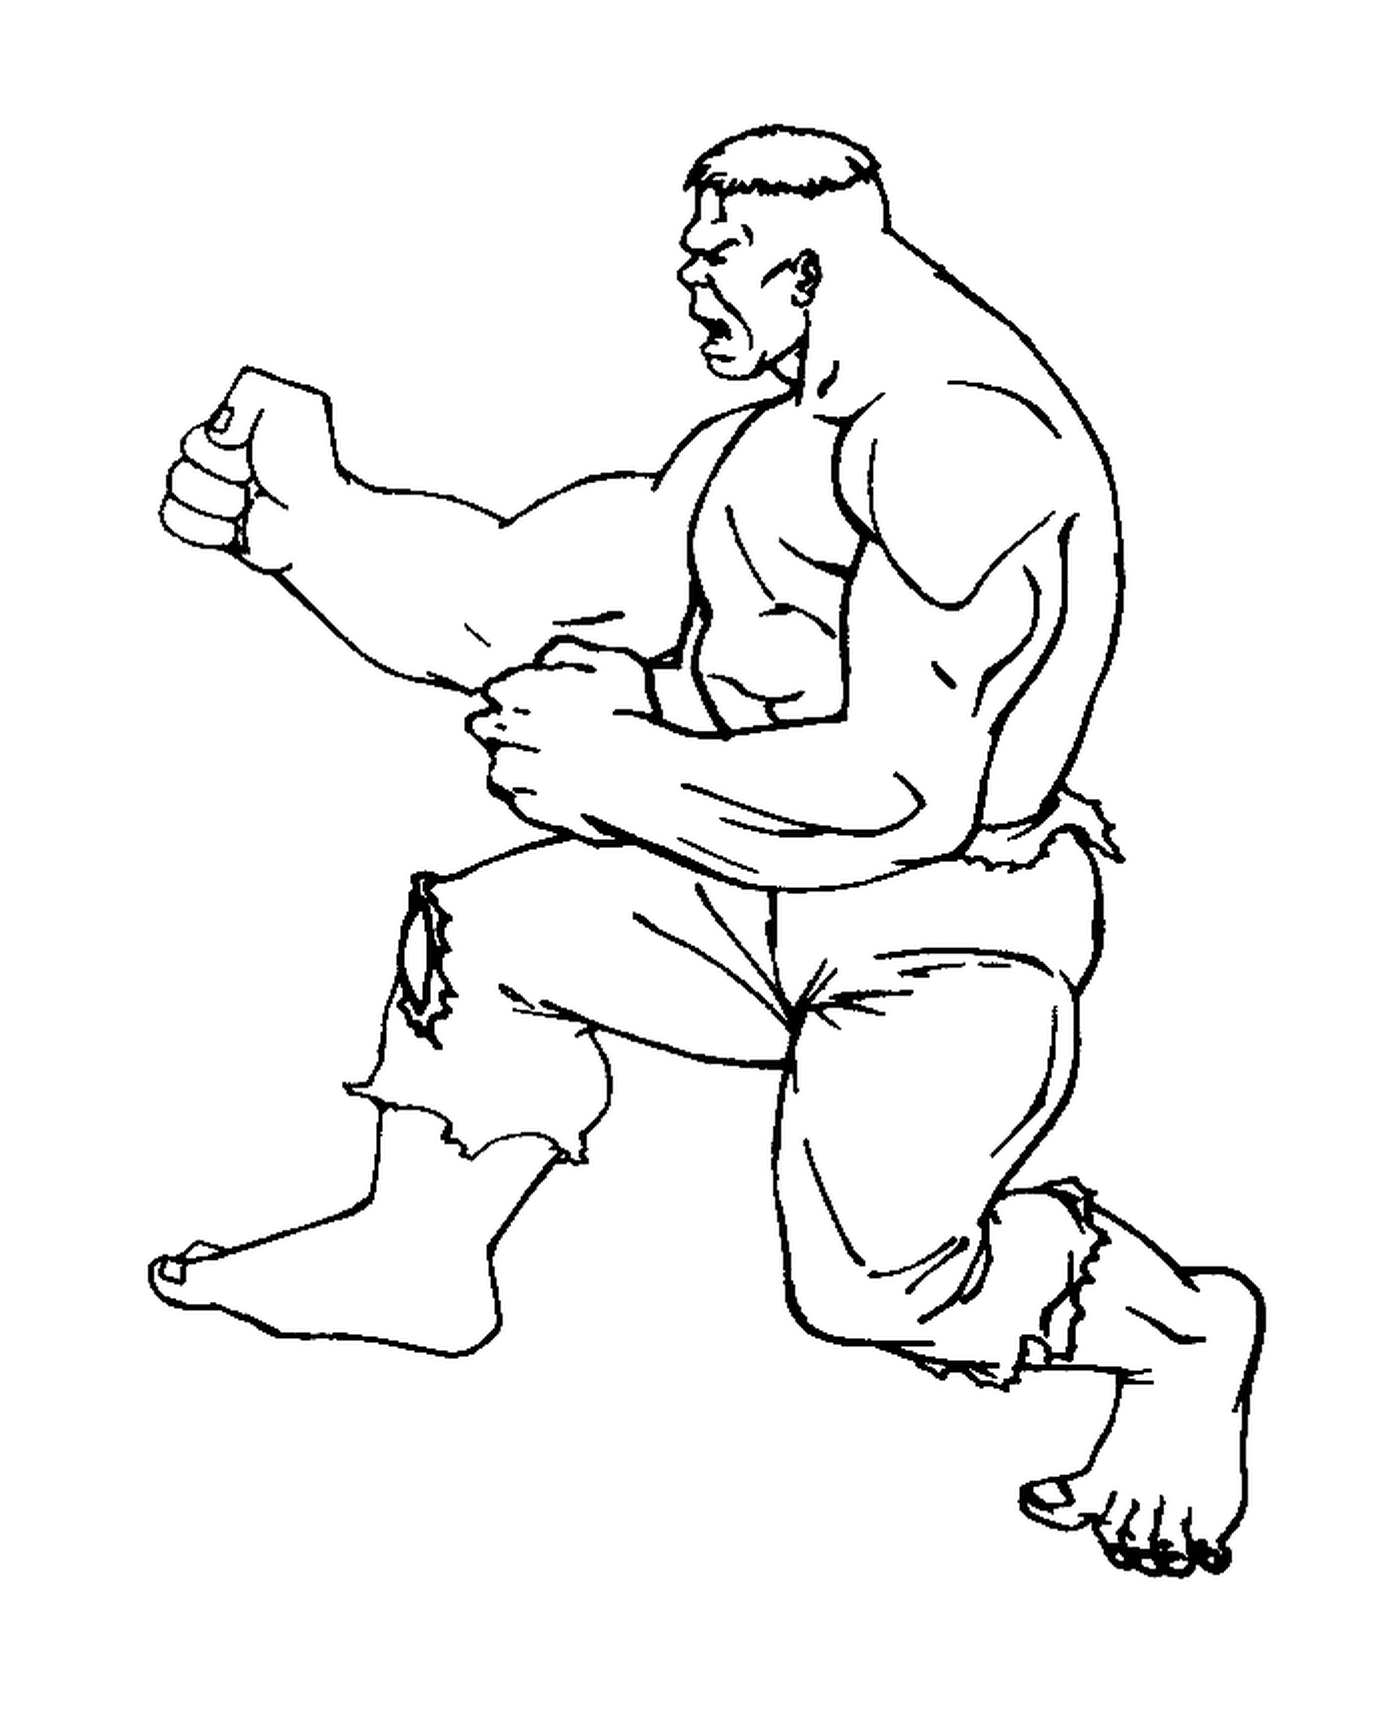  Hulk pratica karatê 